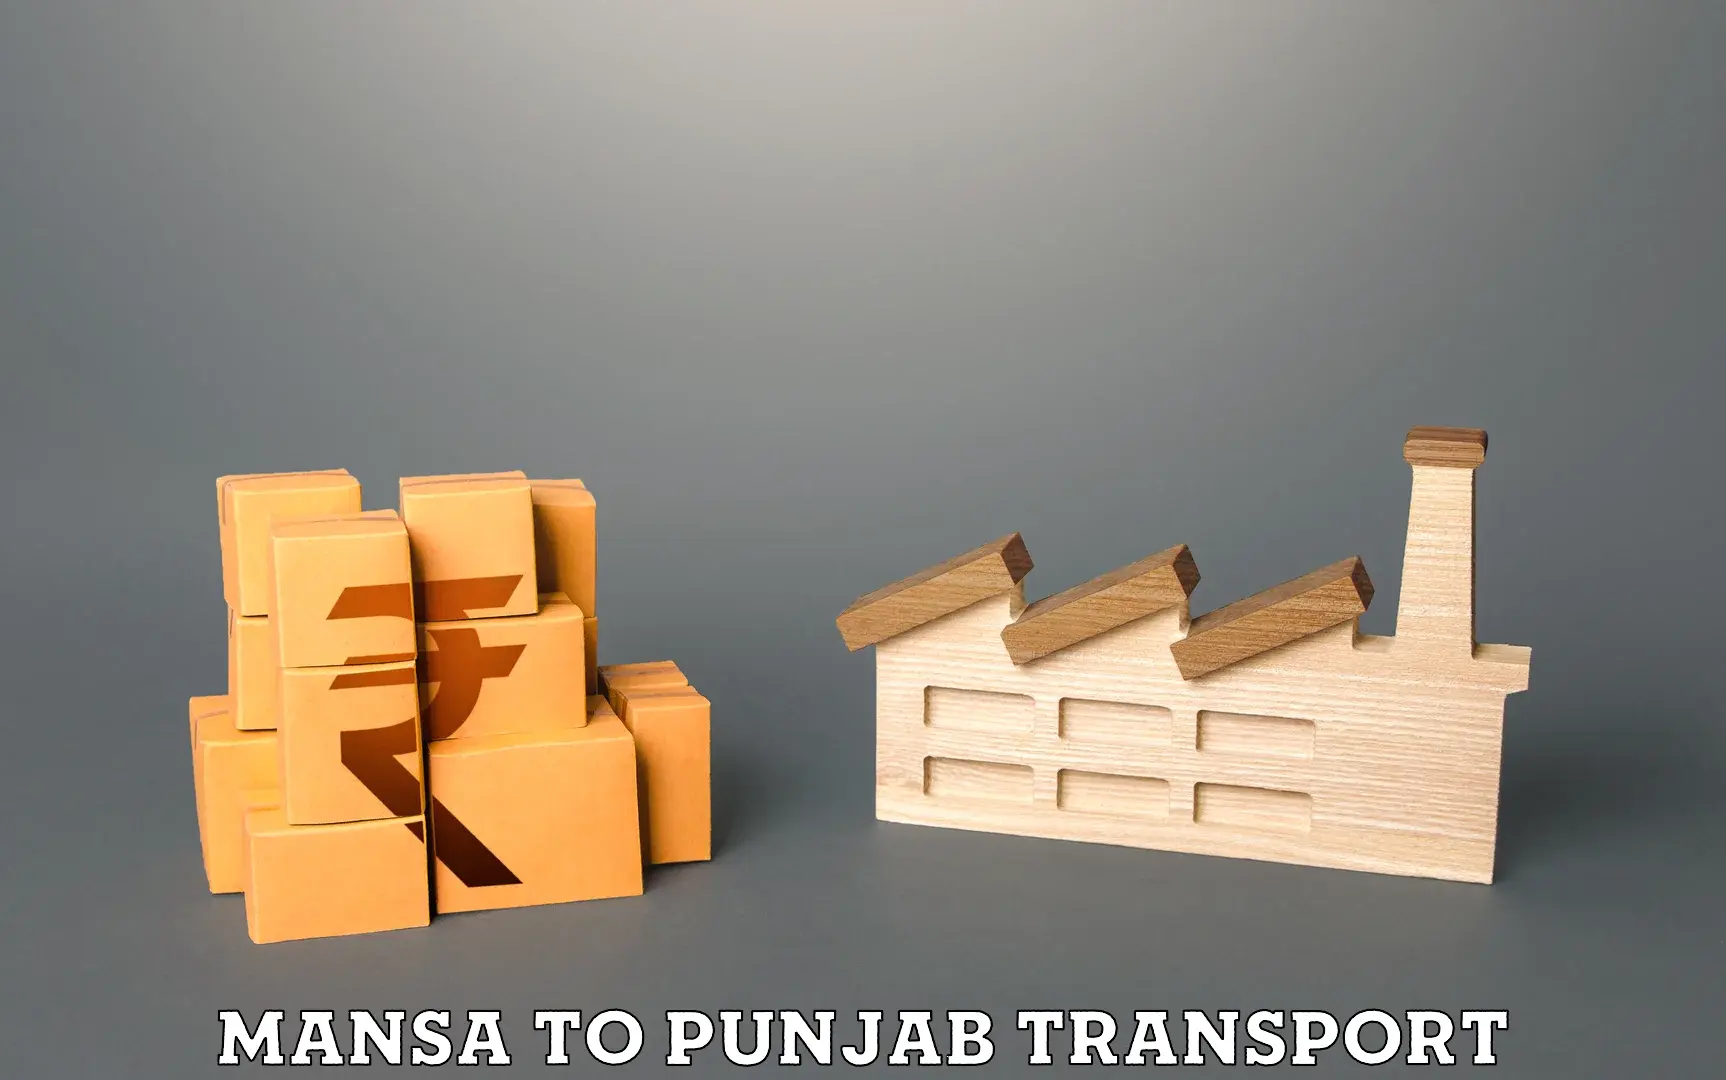 Interstate transport services Mansa to Punjab